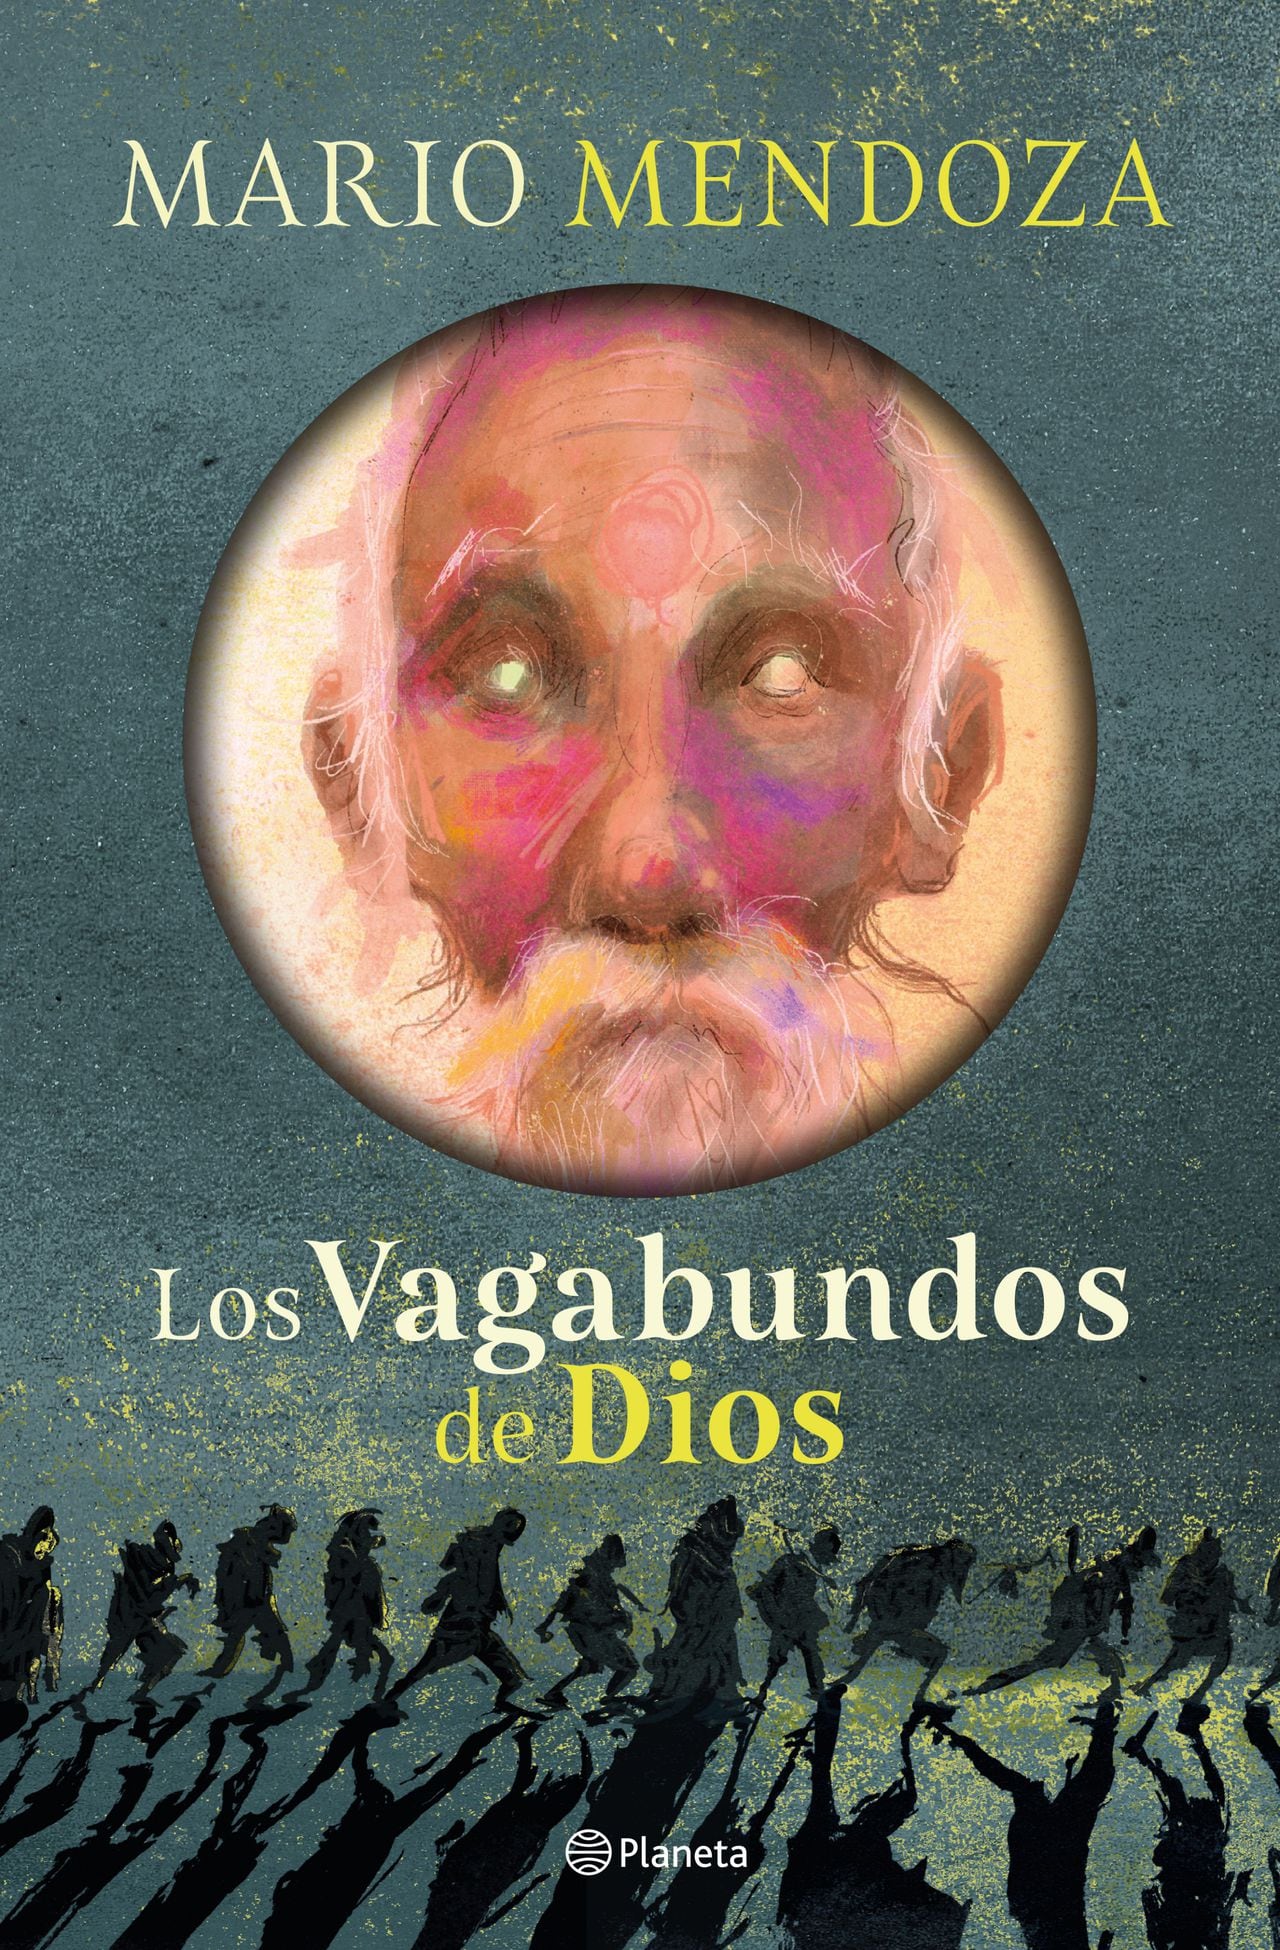 ‘Los vagabundos de Dios’ es la novela número 13 del escritor Mario Mendoza.